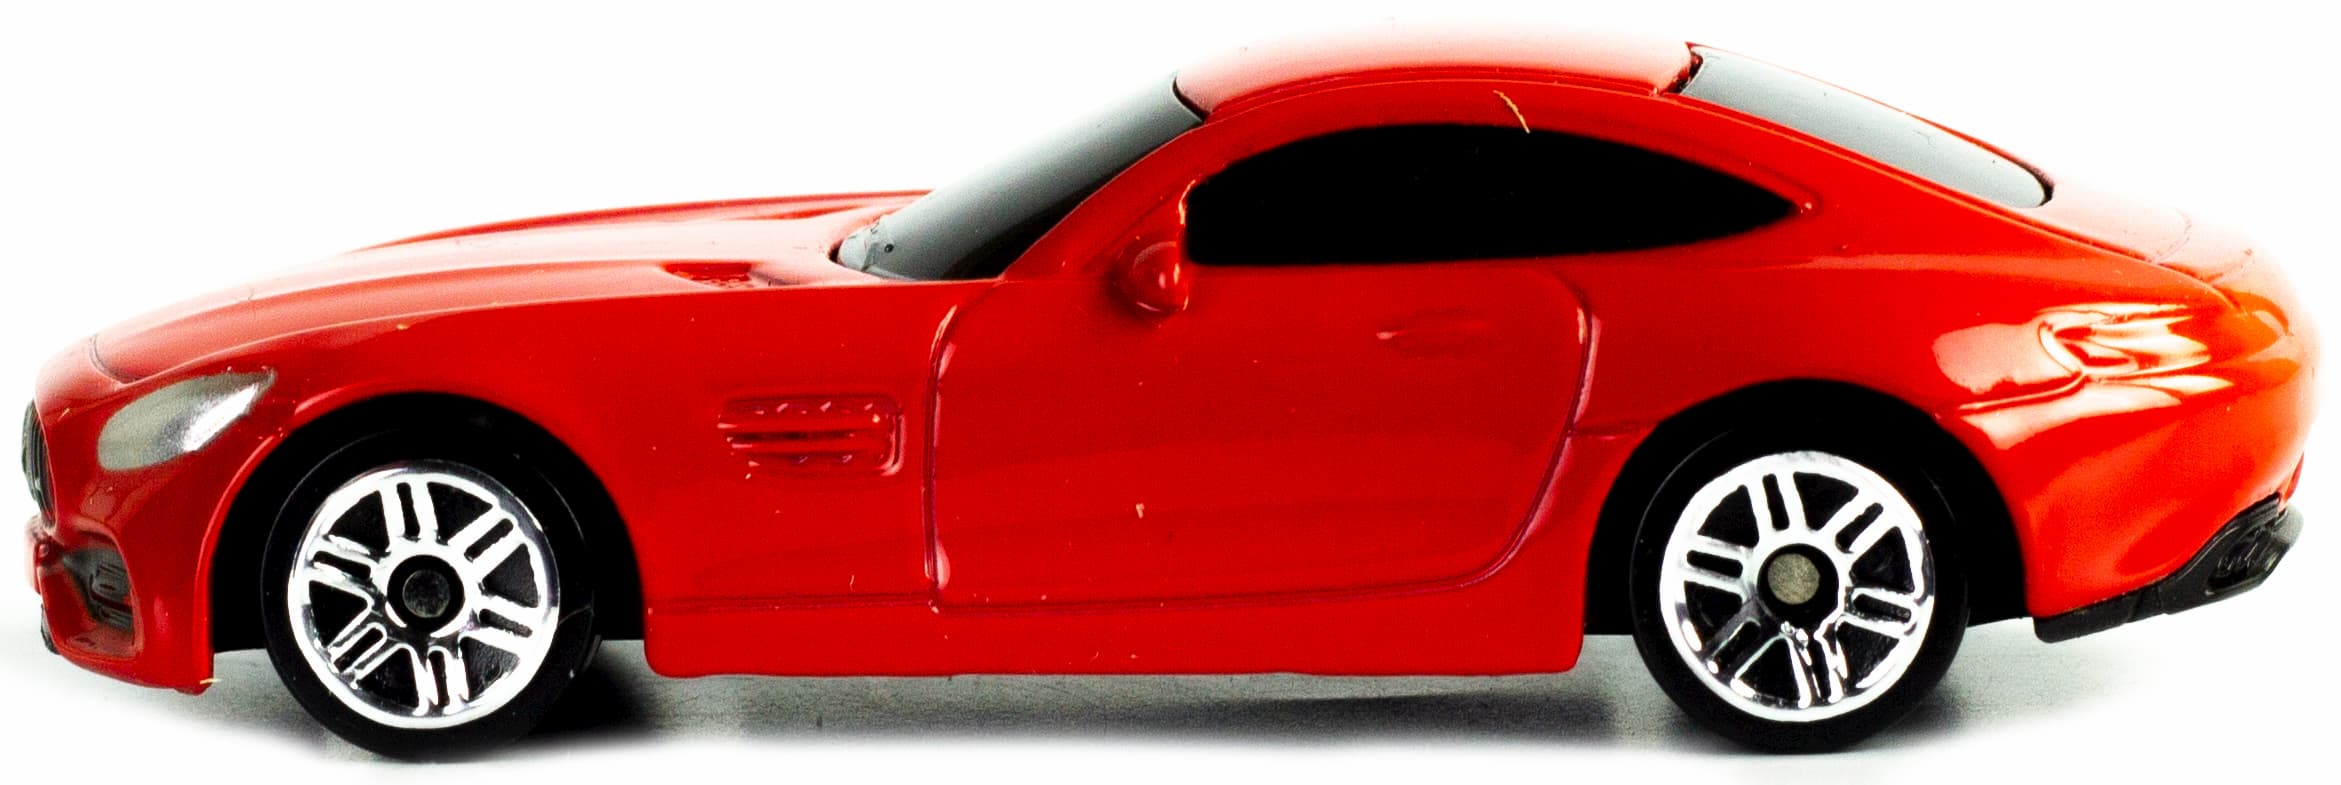 Машинка металлическая RMZ City 1:64 «Mercedes-Benz AMG GT S 2018» 3992 / Красный